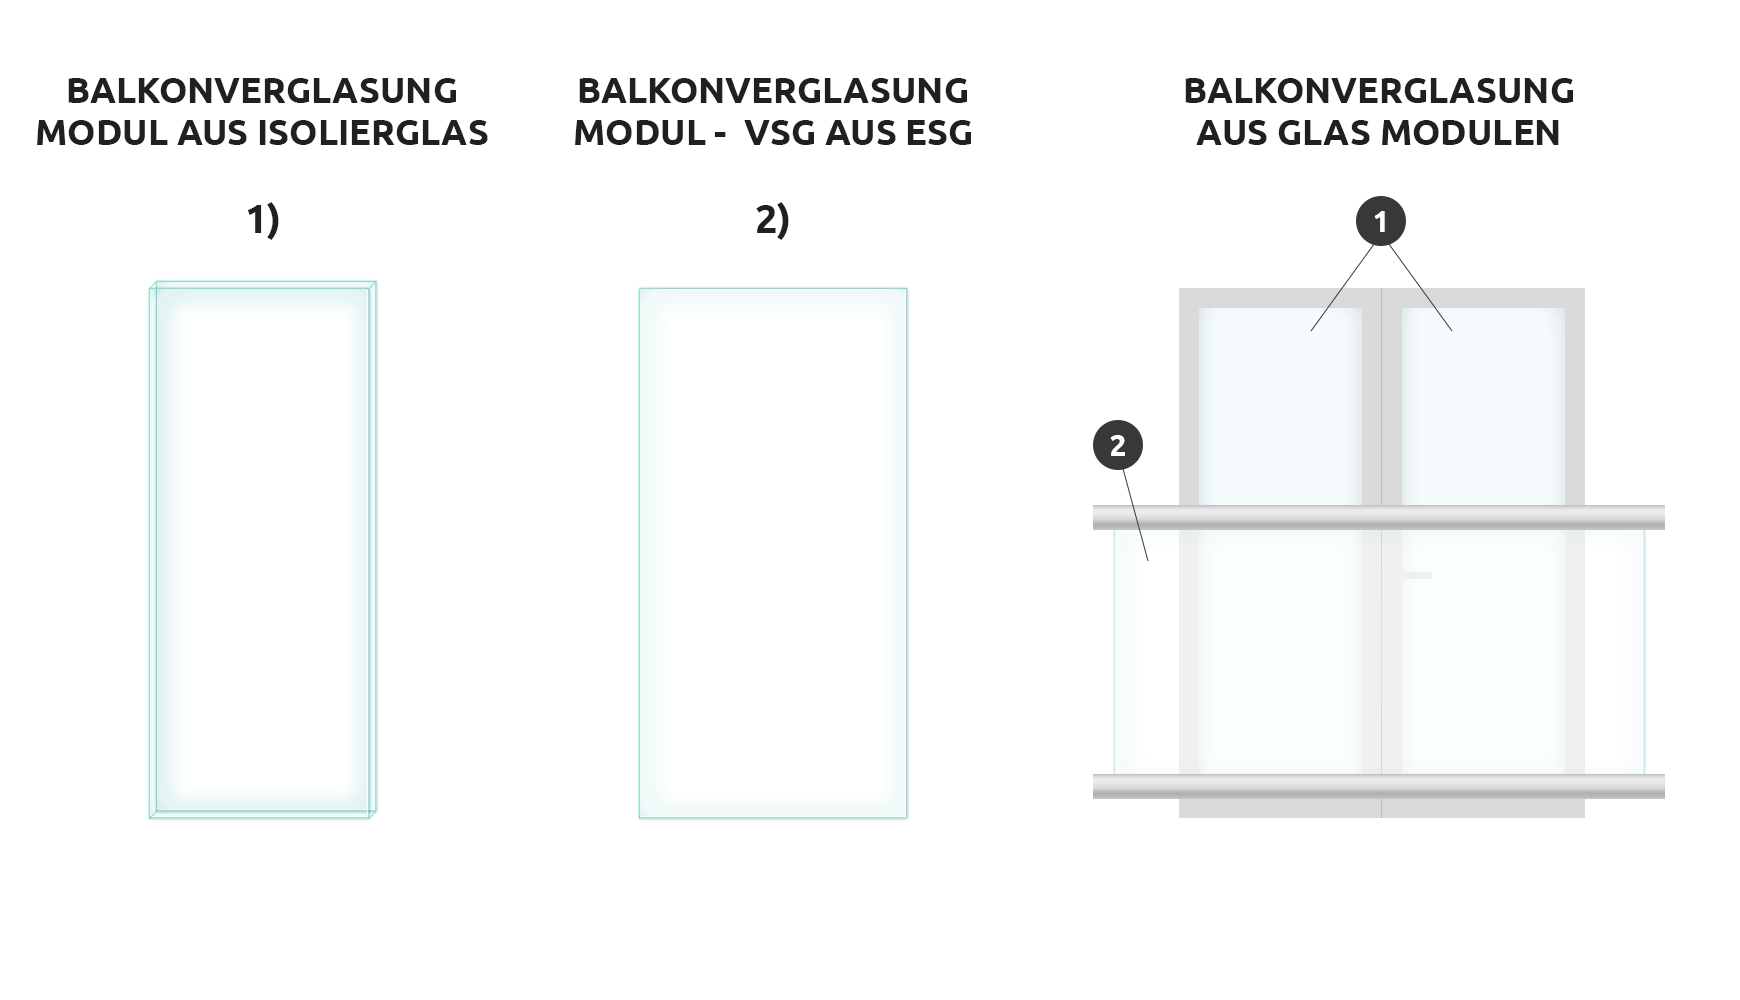 Balkonverglasung aus Glas Modulen